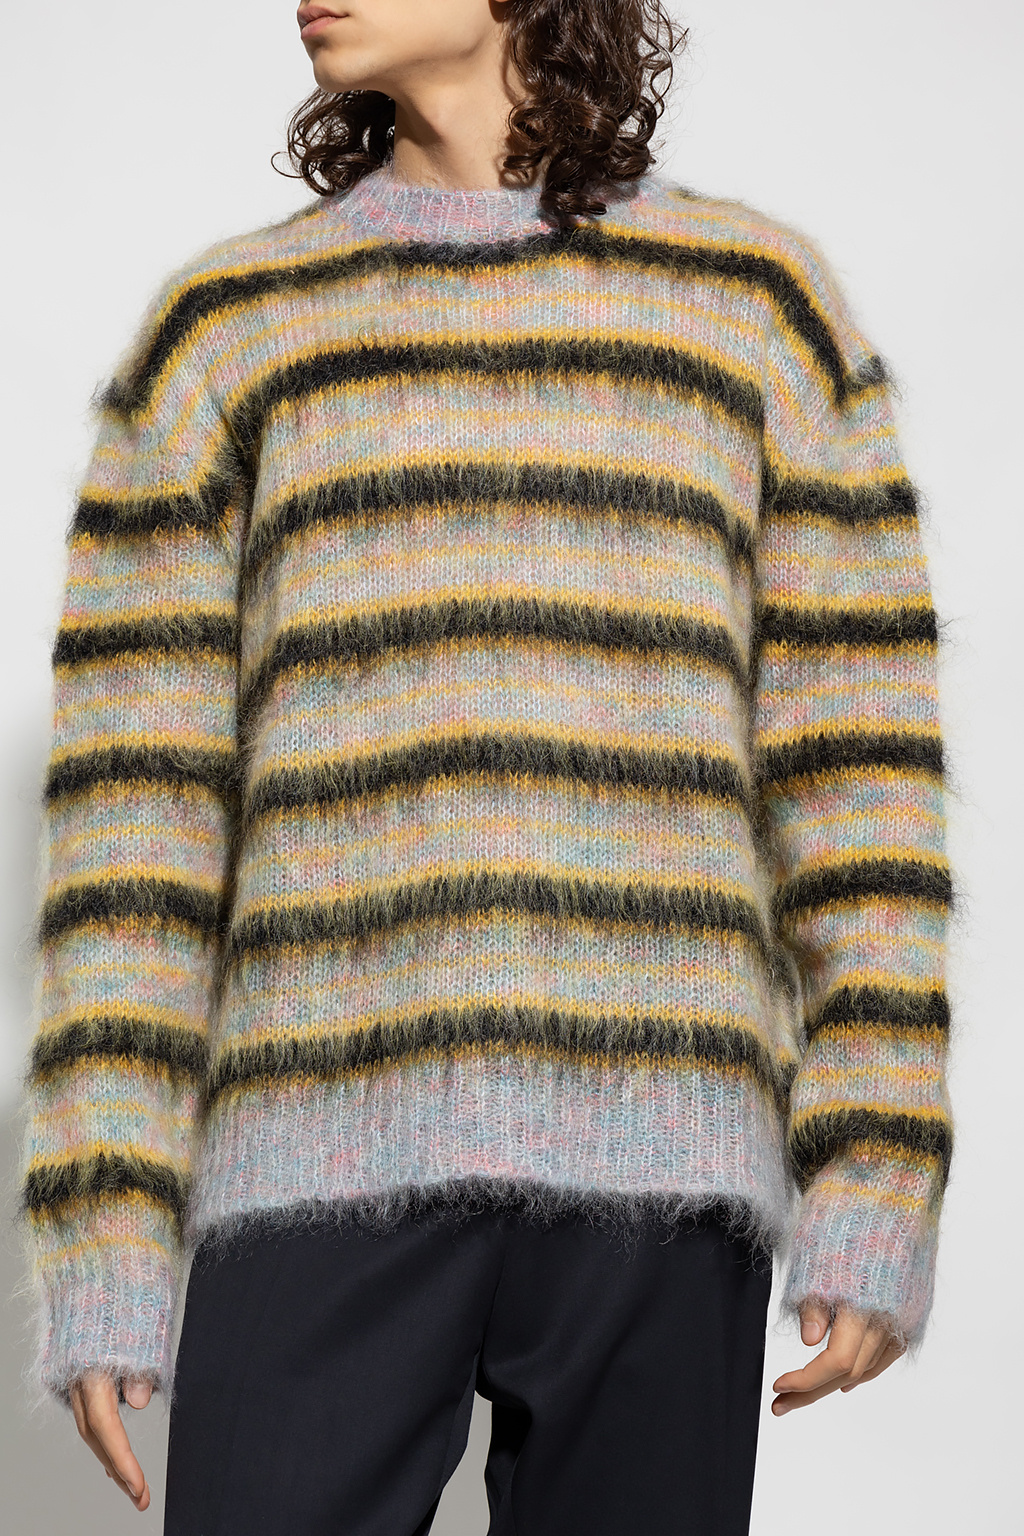 Marni Striped sweater